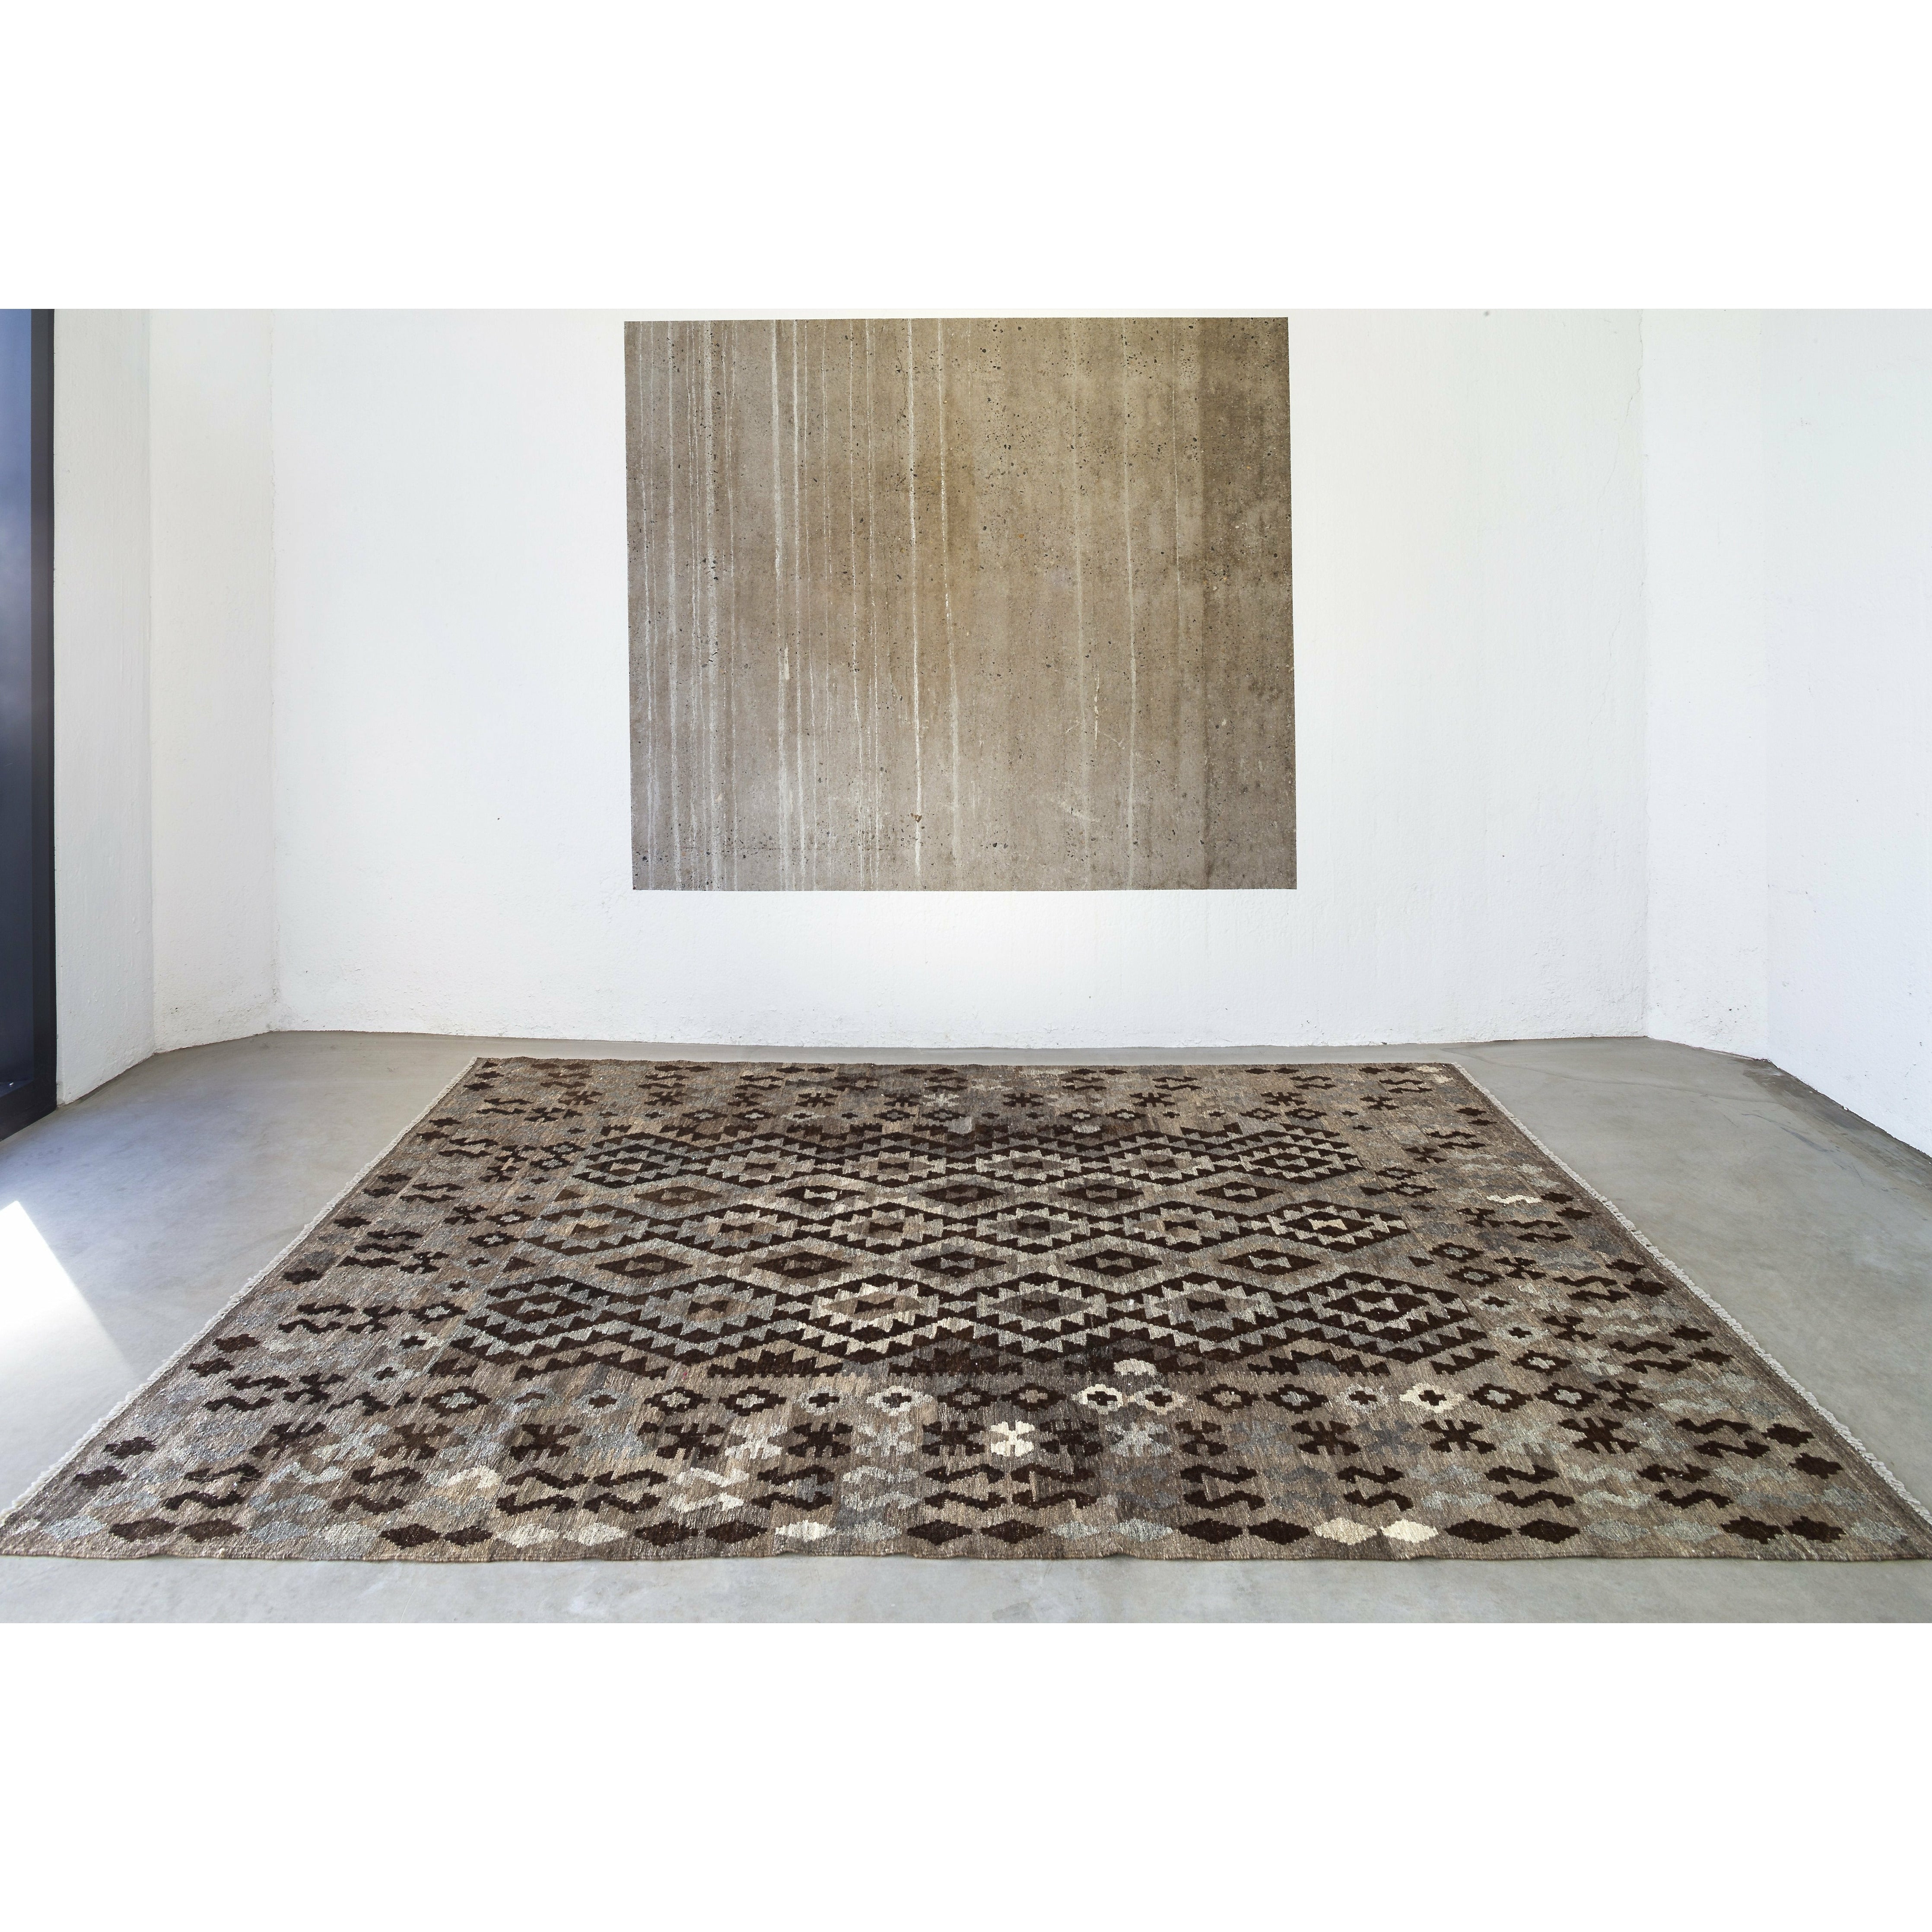 Massimo Kelim Tappeto naturale grigio scuro/marrone/nero, 150x200 cm